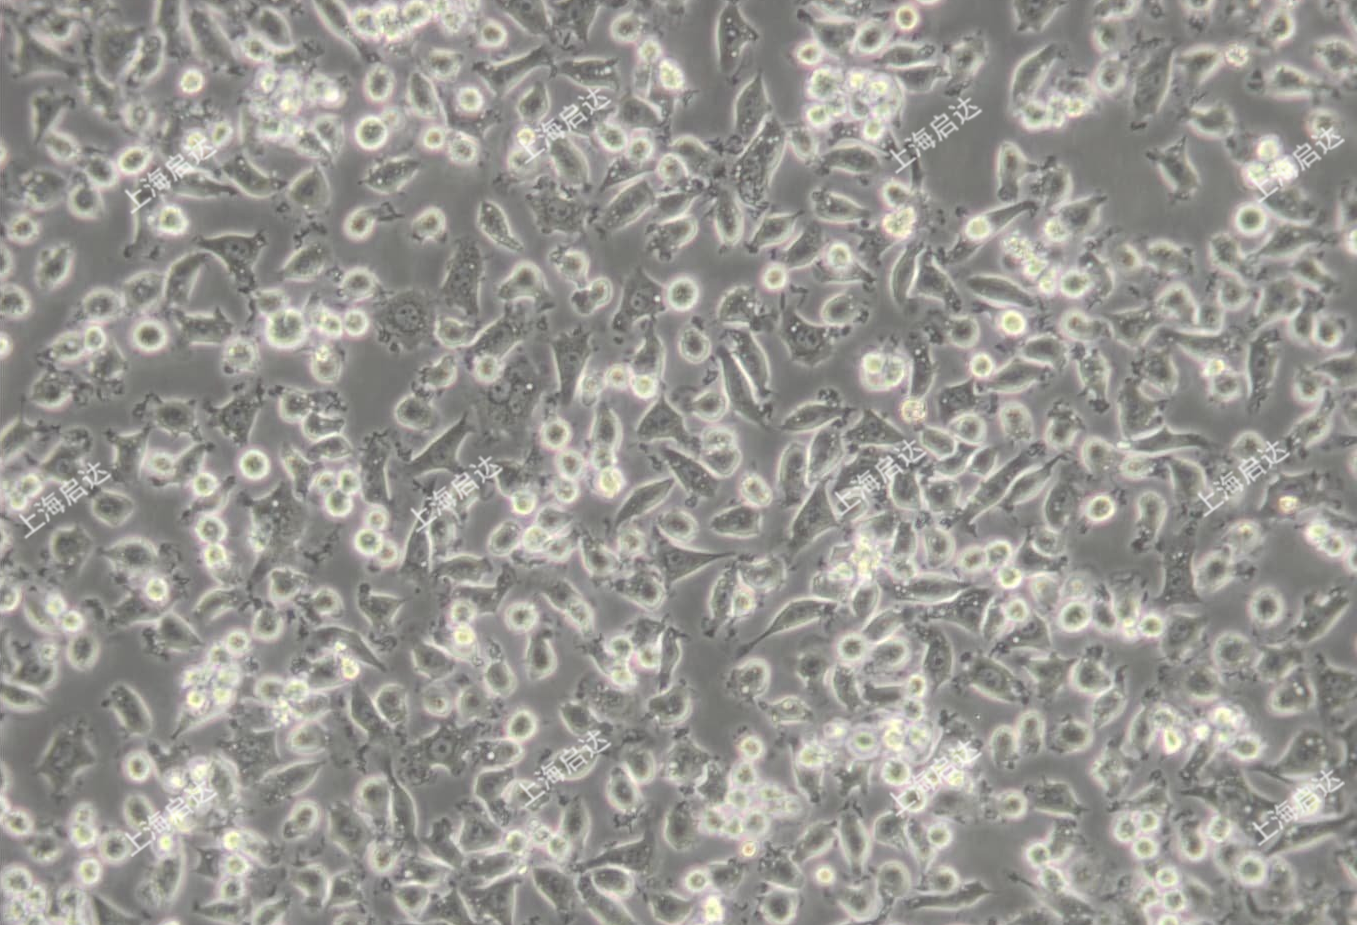 NCTC 1469 [NCTC1469]小鼠正常肝细胞